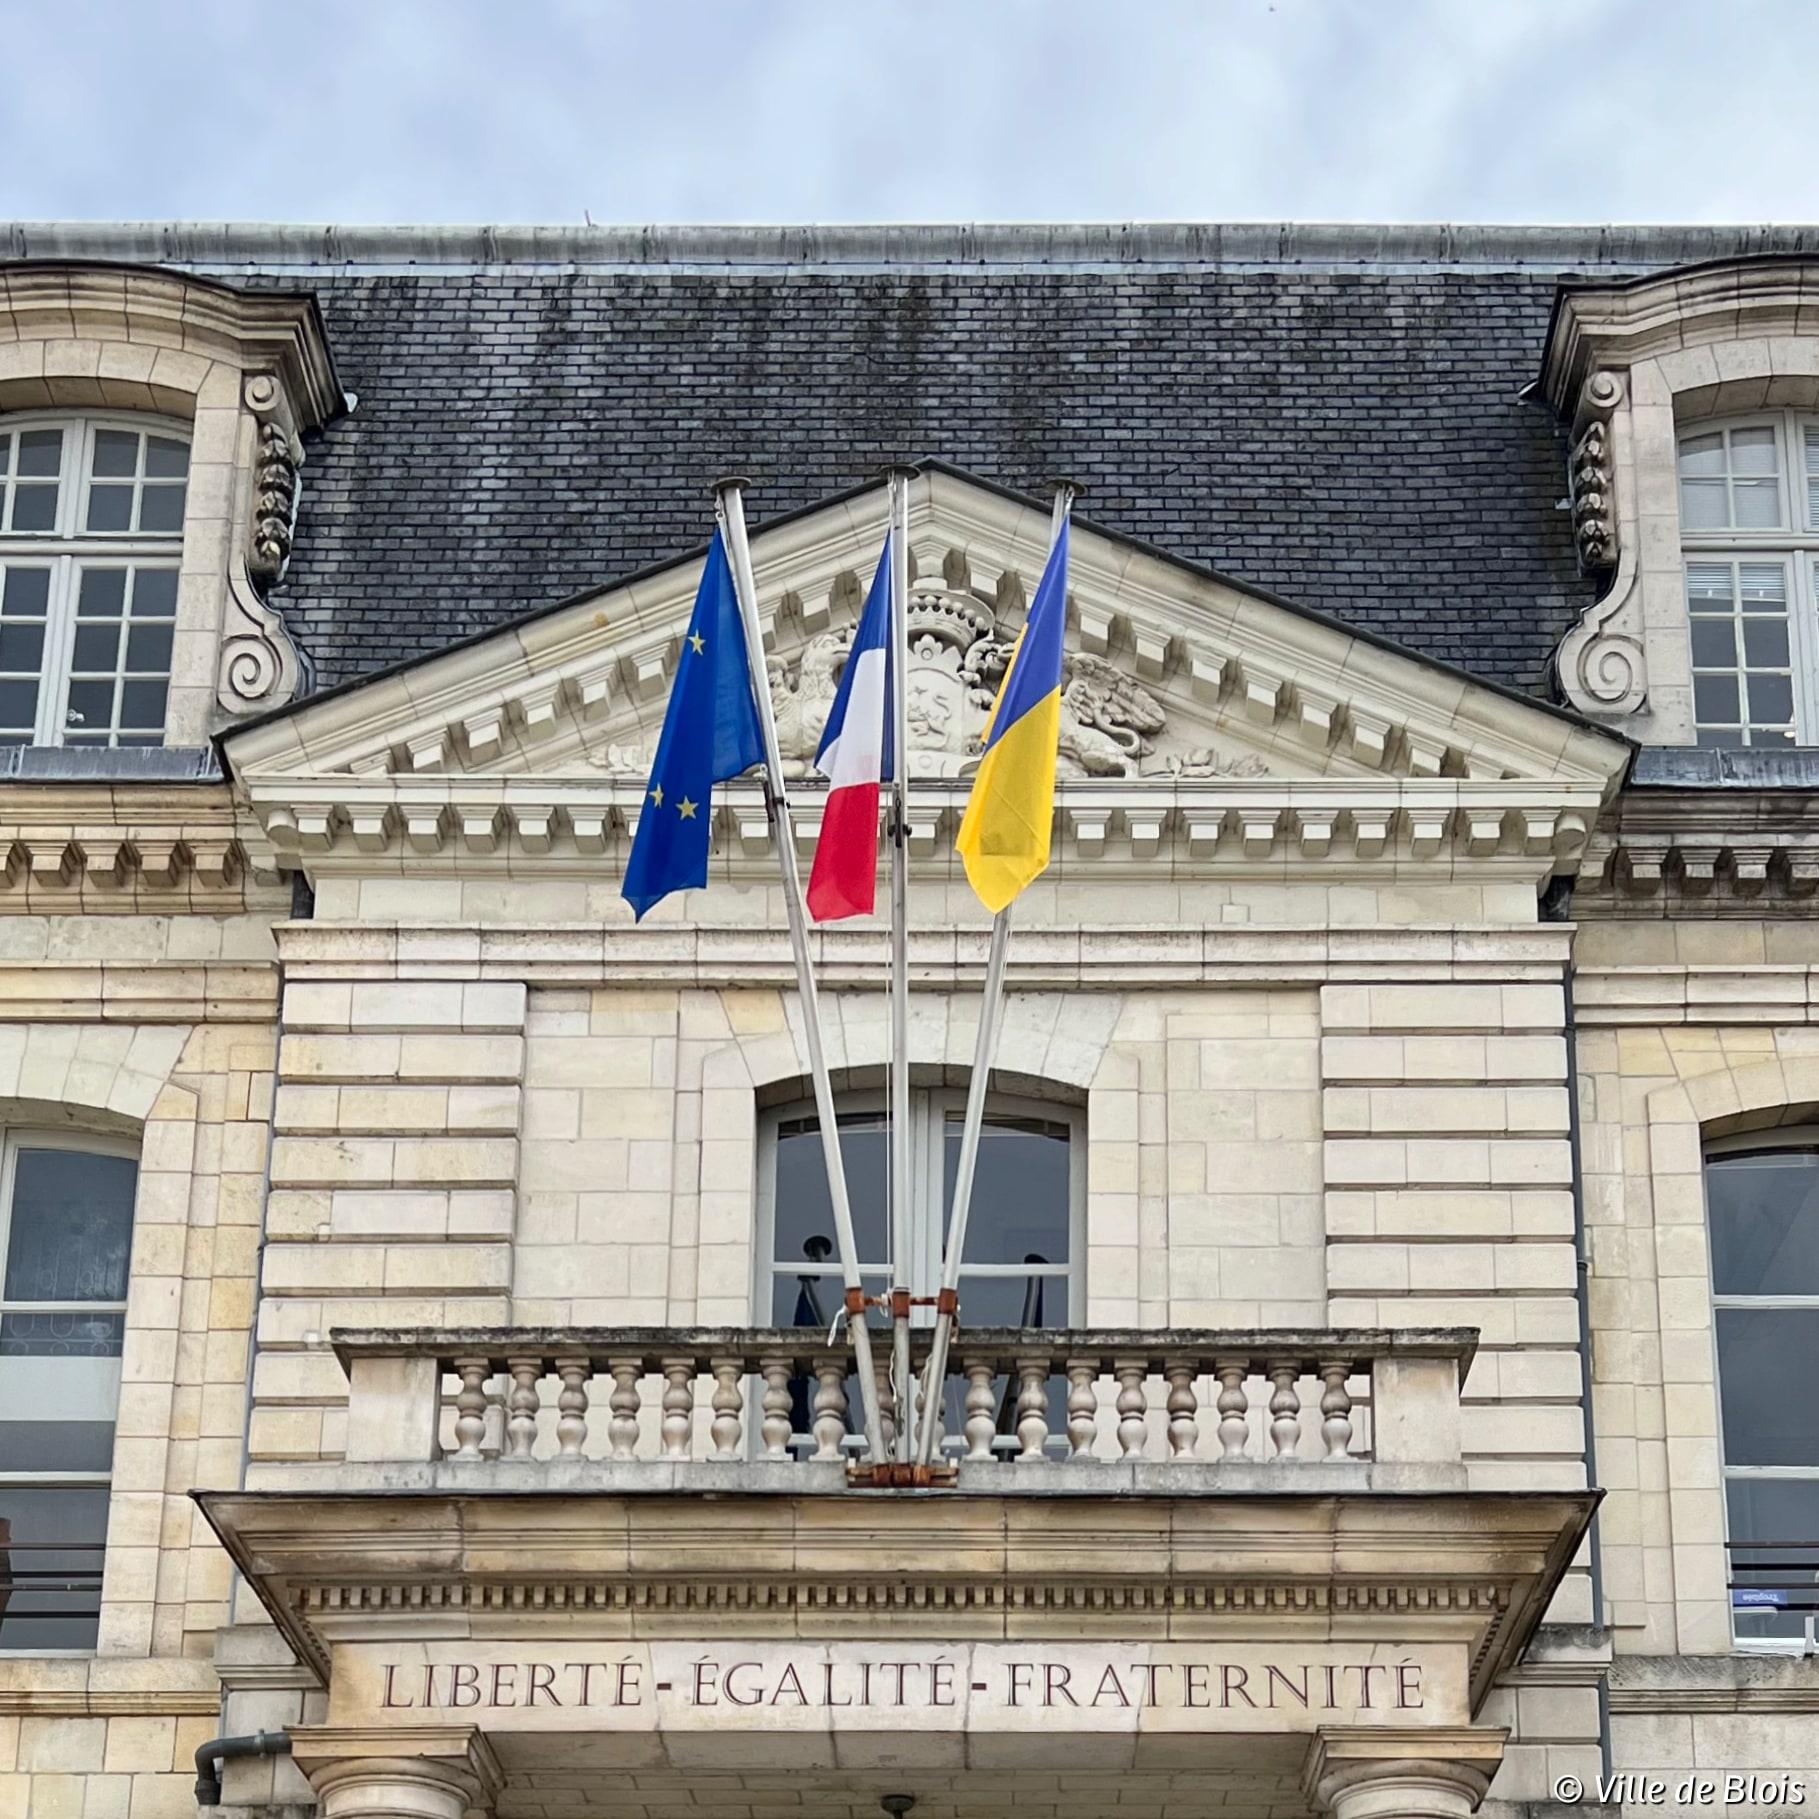 Façade de l’Hôtel de Ville, avec le drapeau ukrainien à côté du drapeau français et de l’Union européenne.